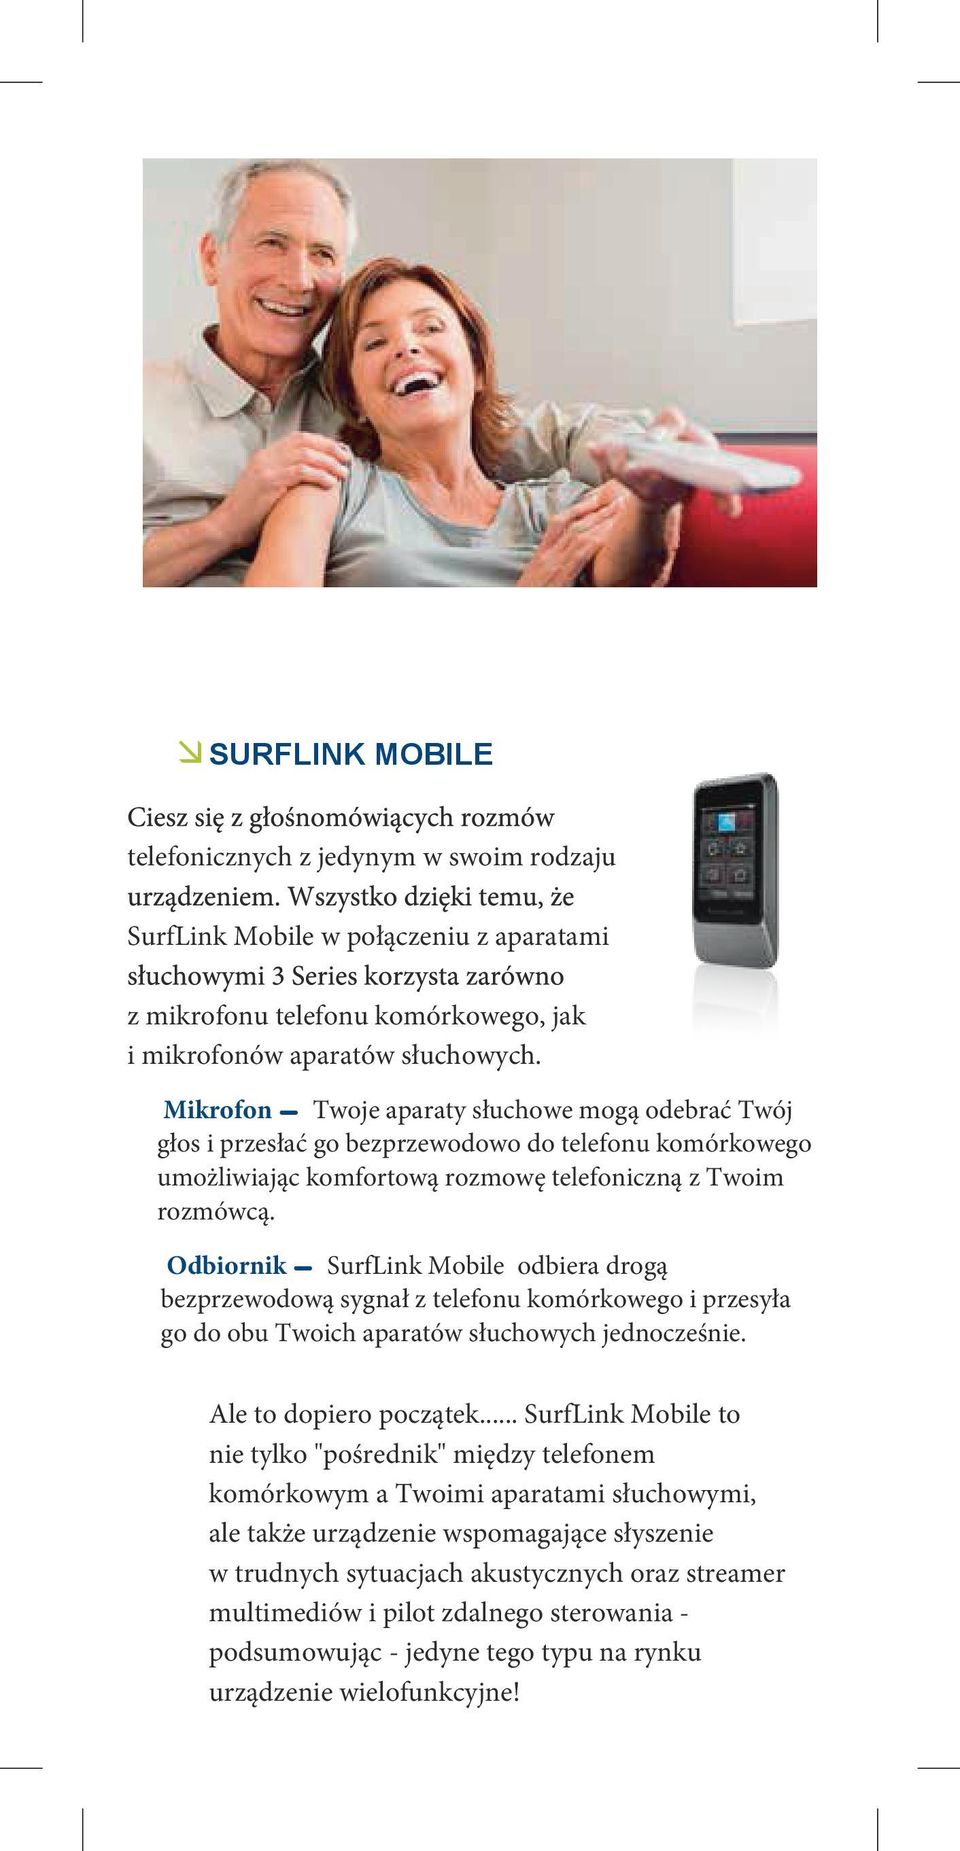 Odbiornik SurfLink Mobile odbiera drogą bezprzewodową sygnał z telefonu komórkowego i przesyła go do obu Twoich aparatów słuchowych jednocześnie. Ale to dopiero początek.